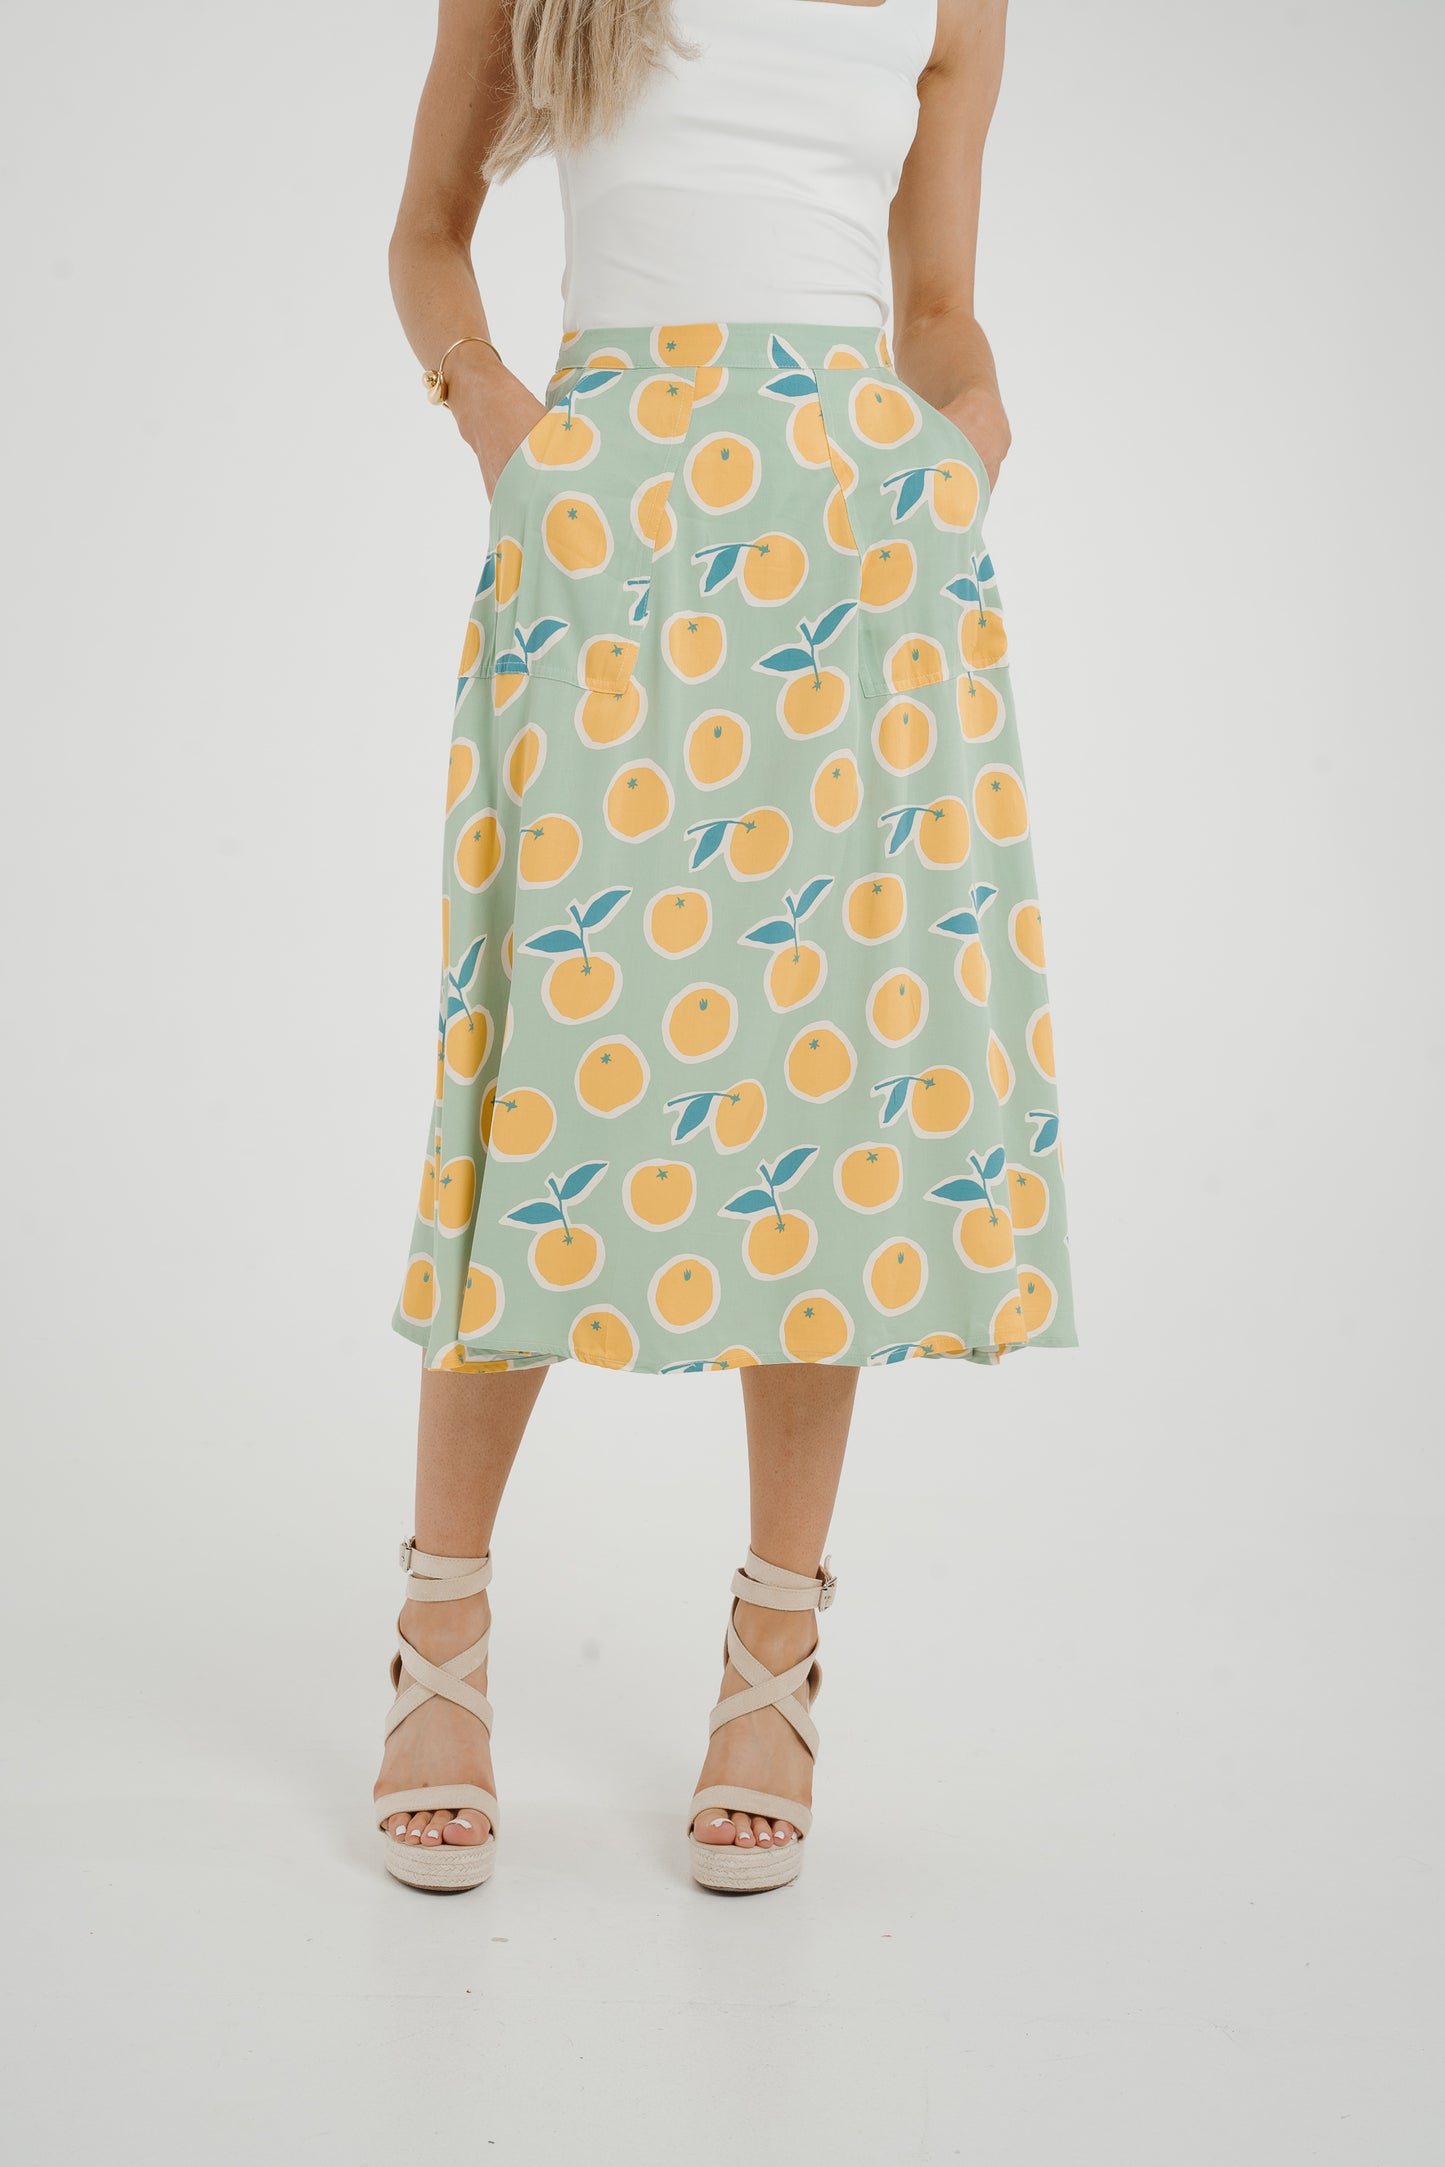 Frankie Orange & Lemon Print Skirt